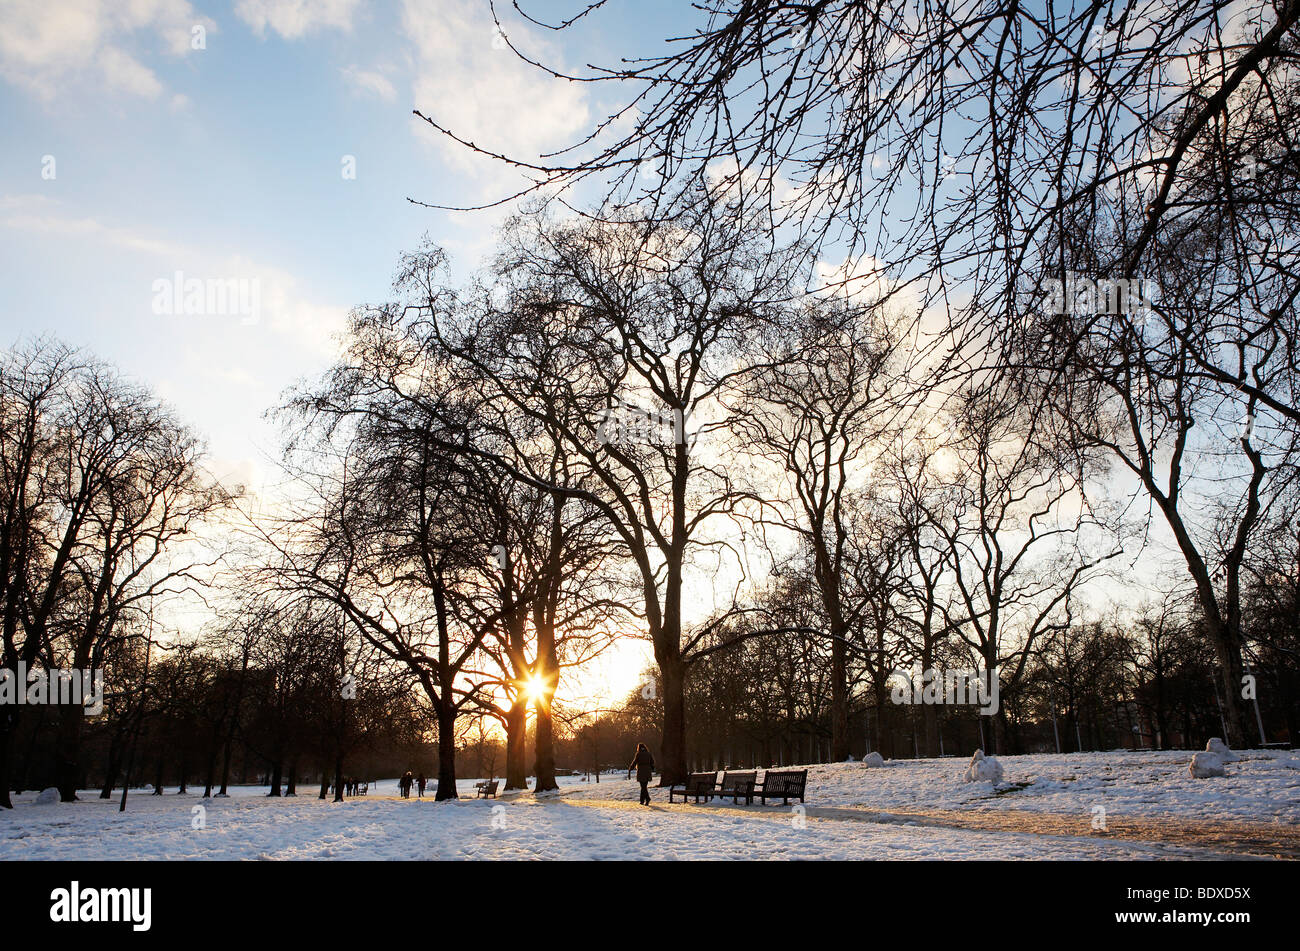 Londres: St James' Park en la nieve. Foto de stock